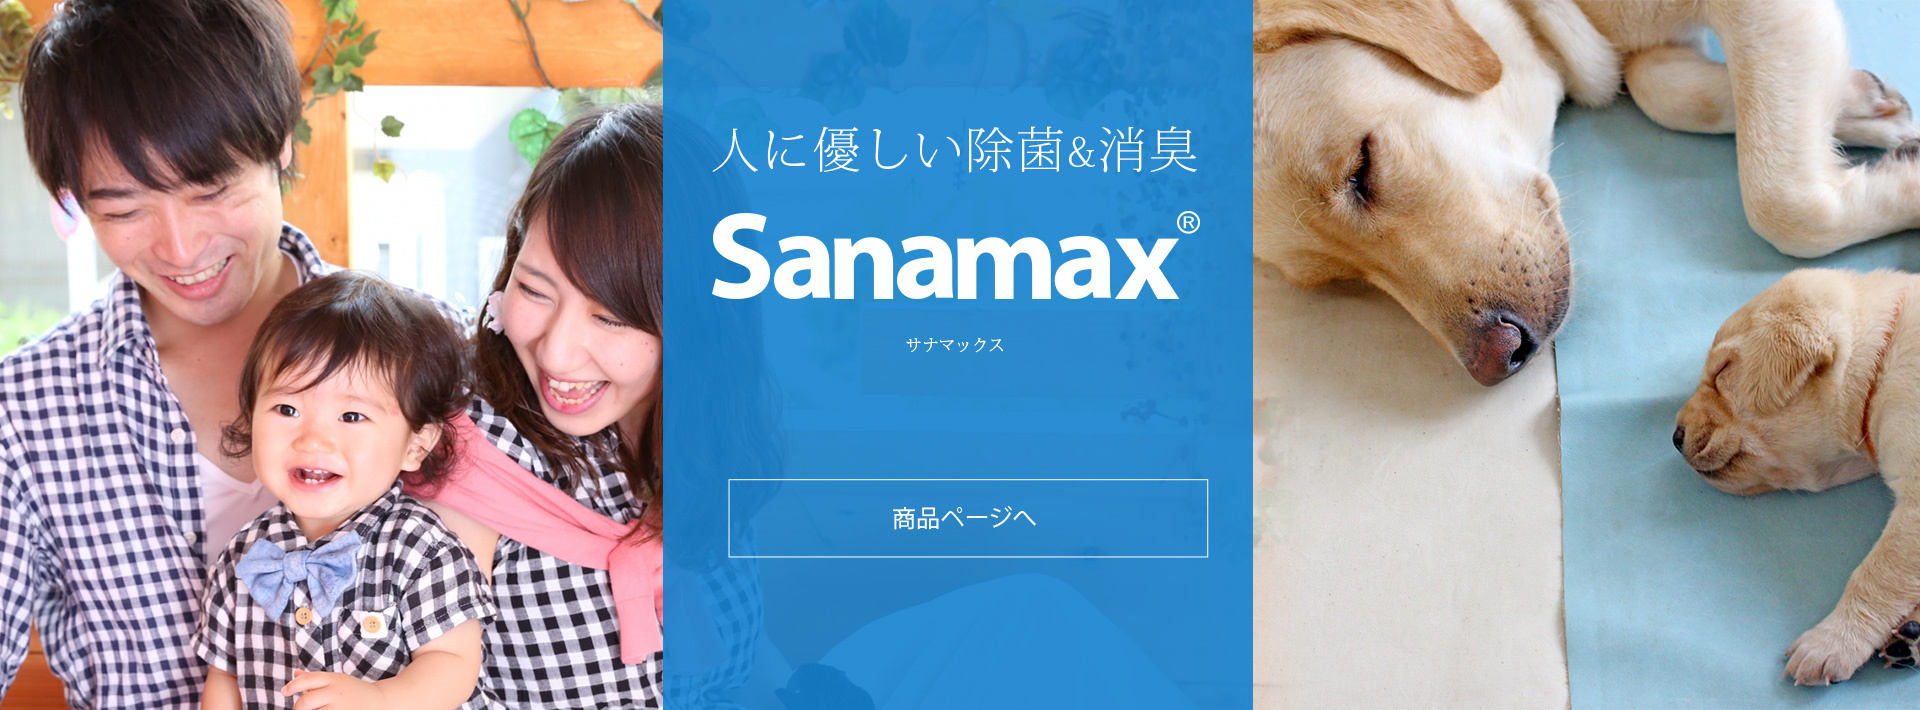 Sanamax サナマックス